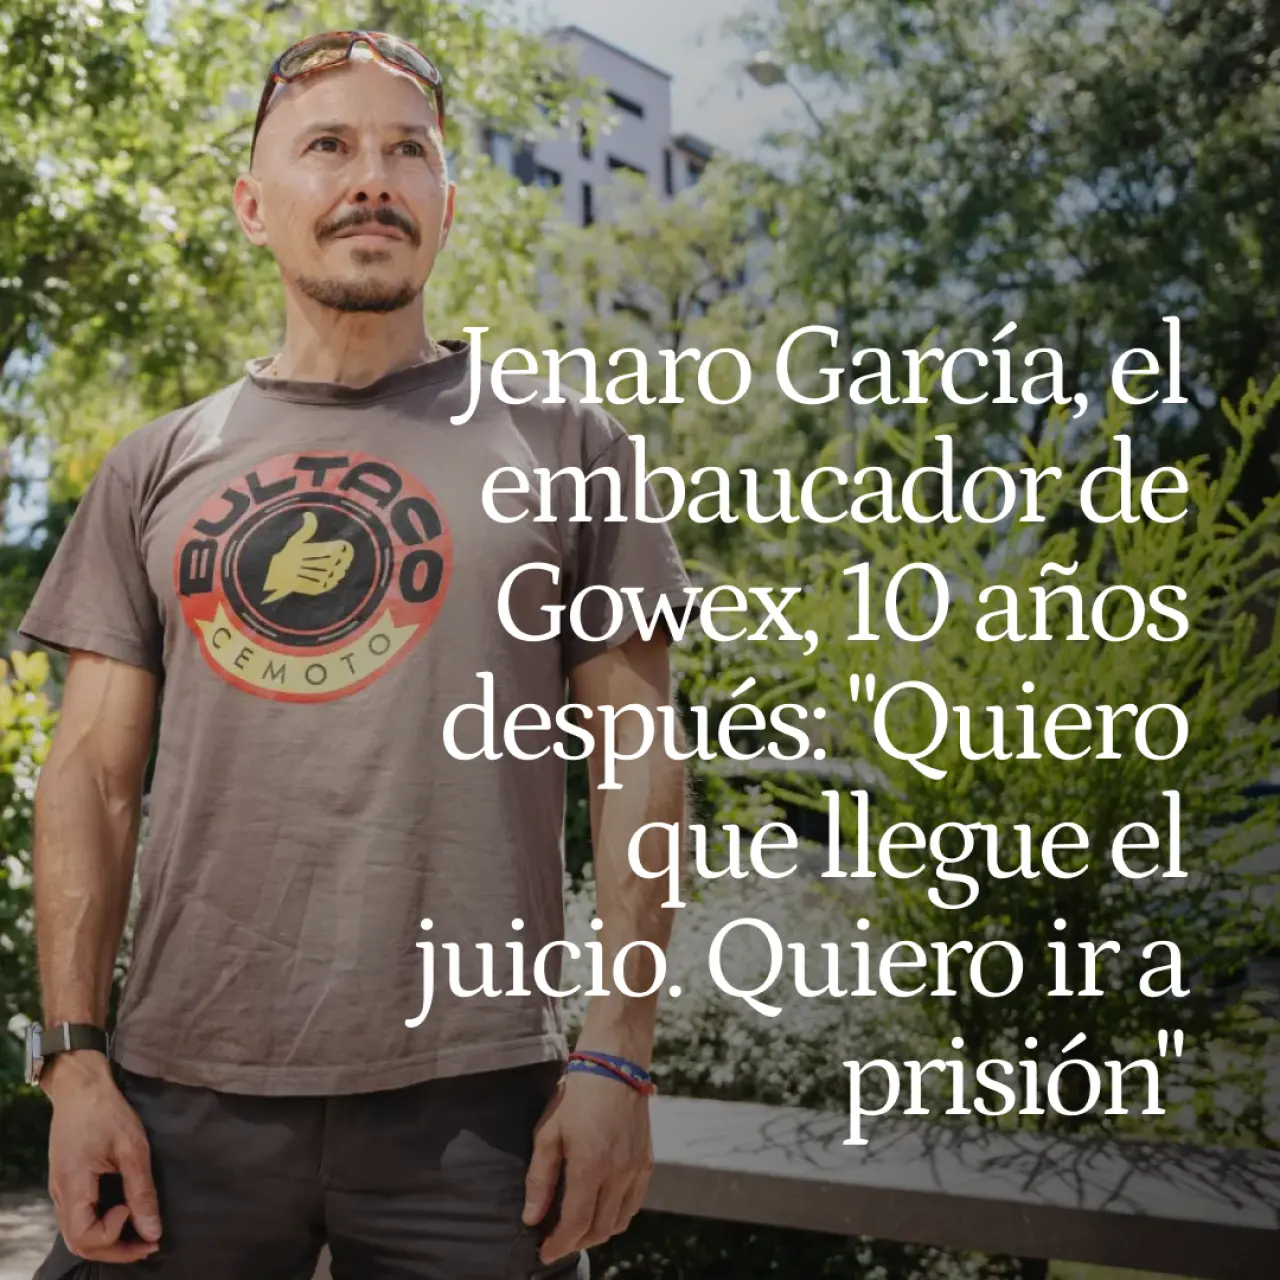 El embaucador de Gowex, 10 años después: "Quiero que llegue el juicio e ir a prisión"